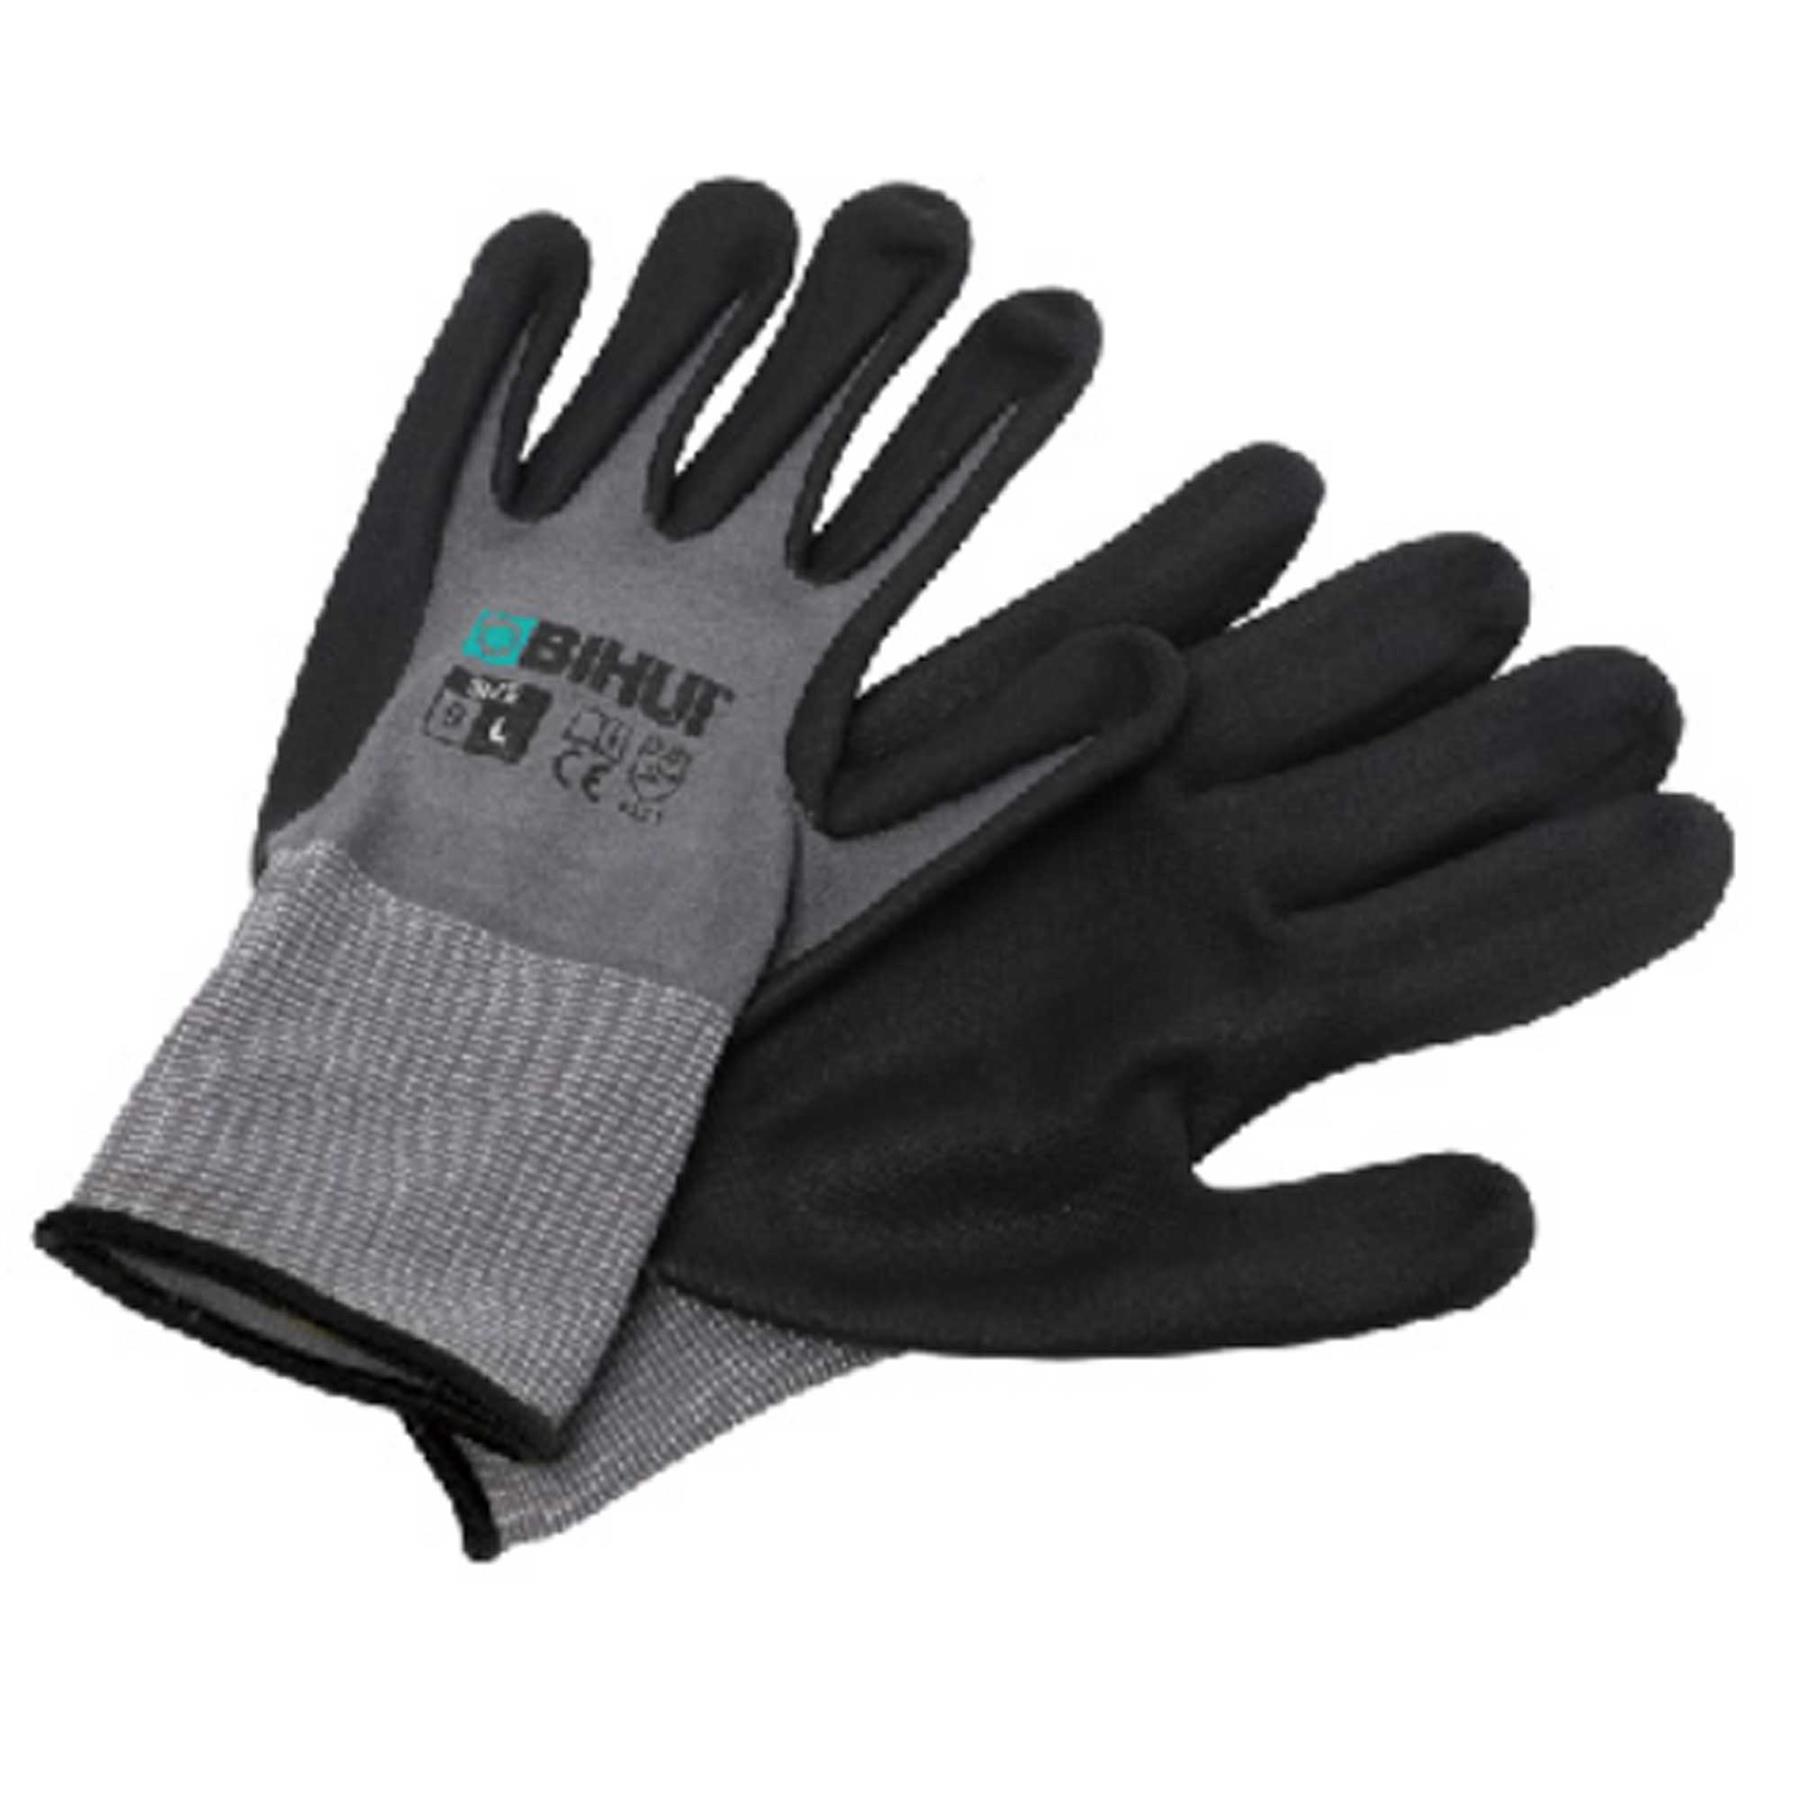 BIHUI Safety Gloves